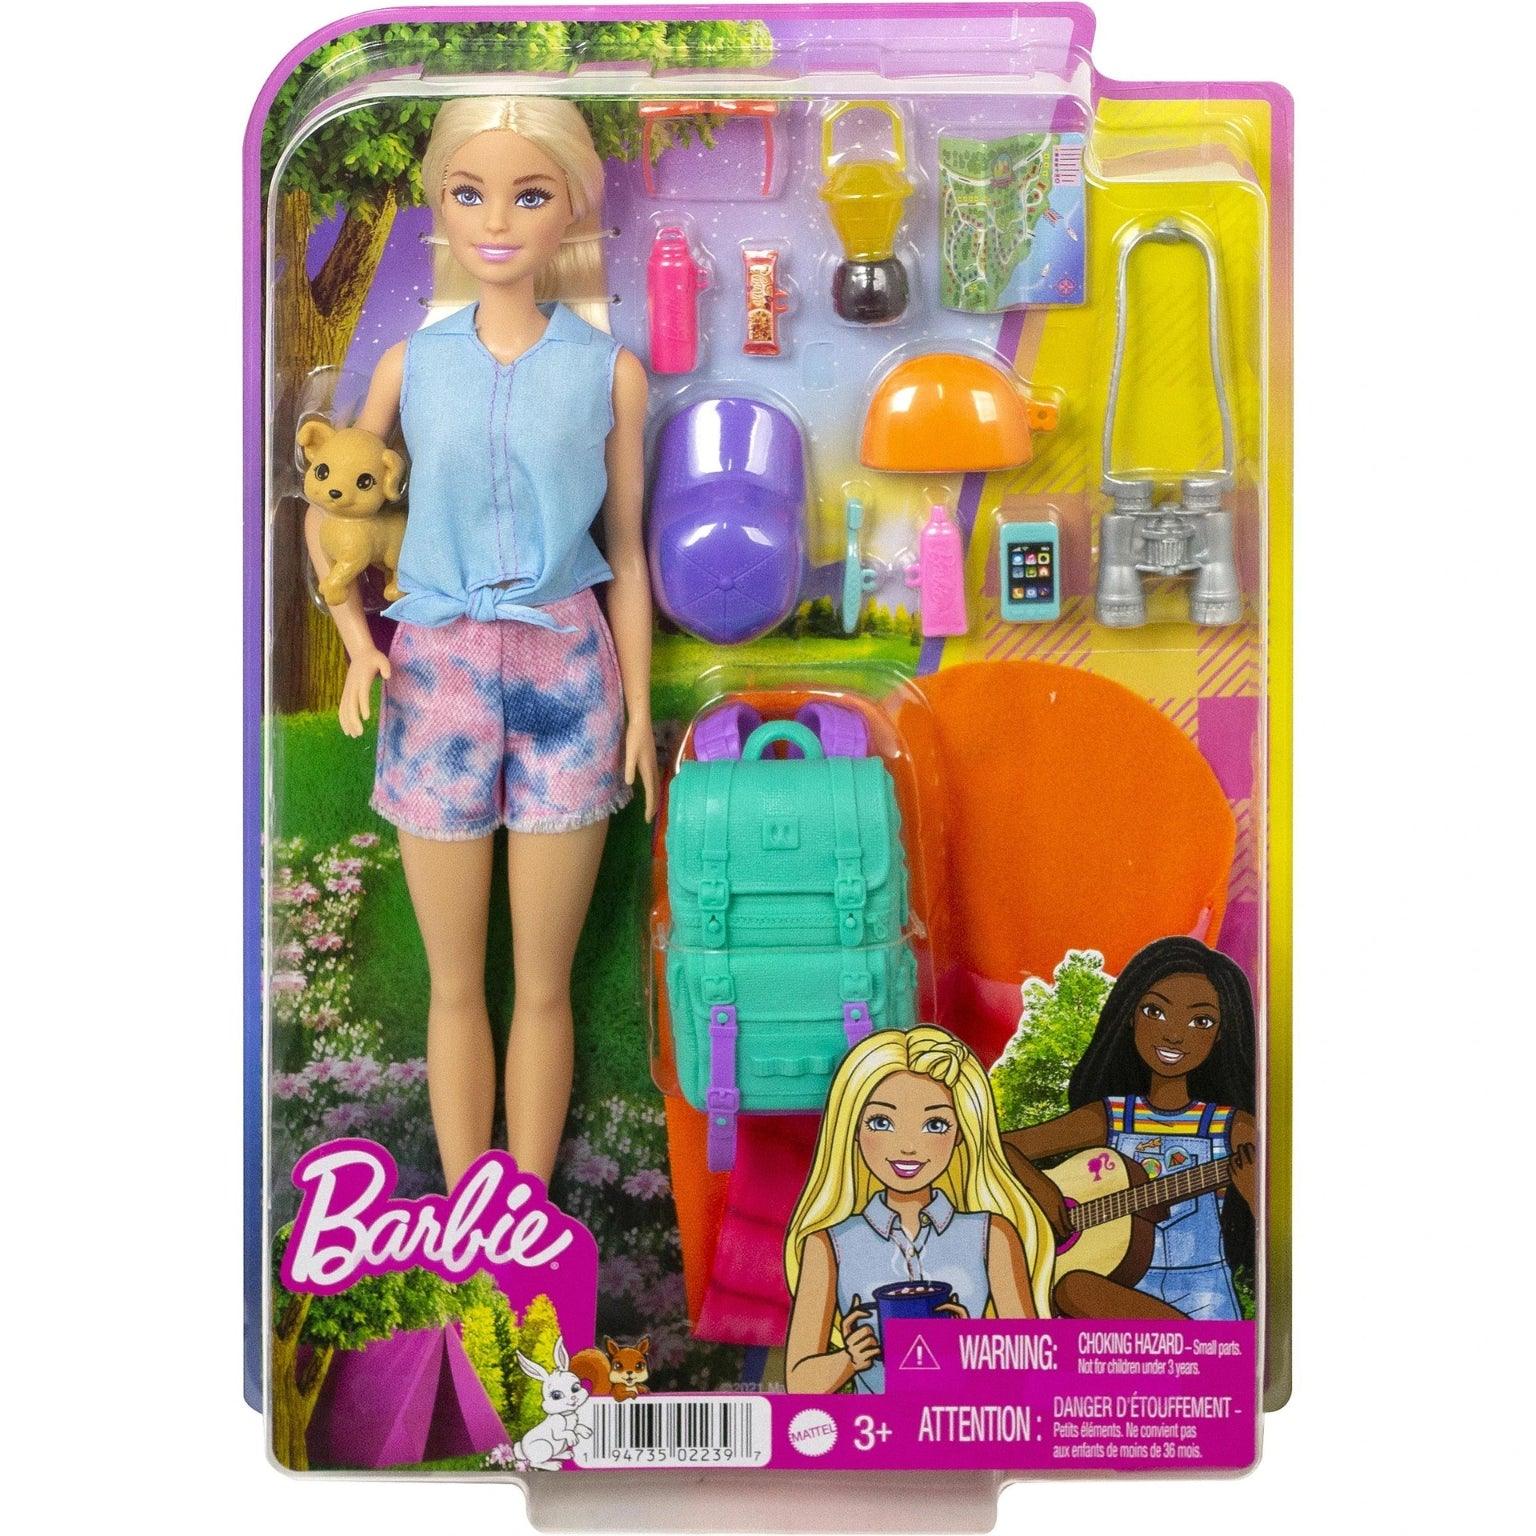 Barbie Malibú - Brincatoys